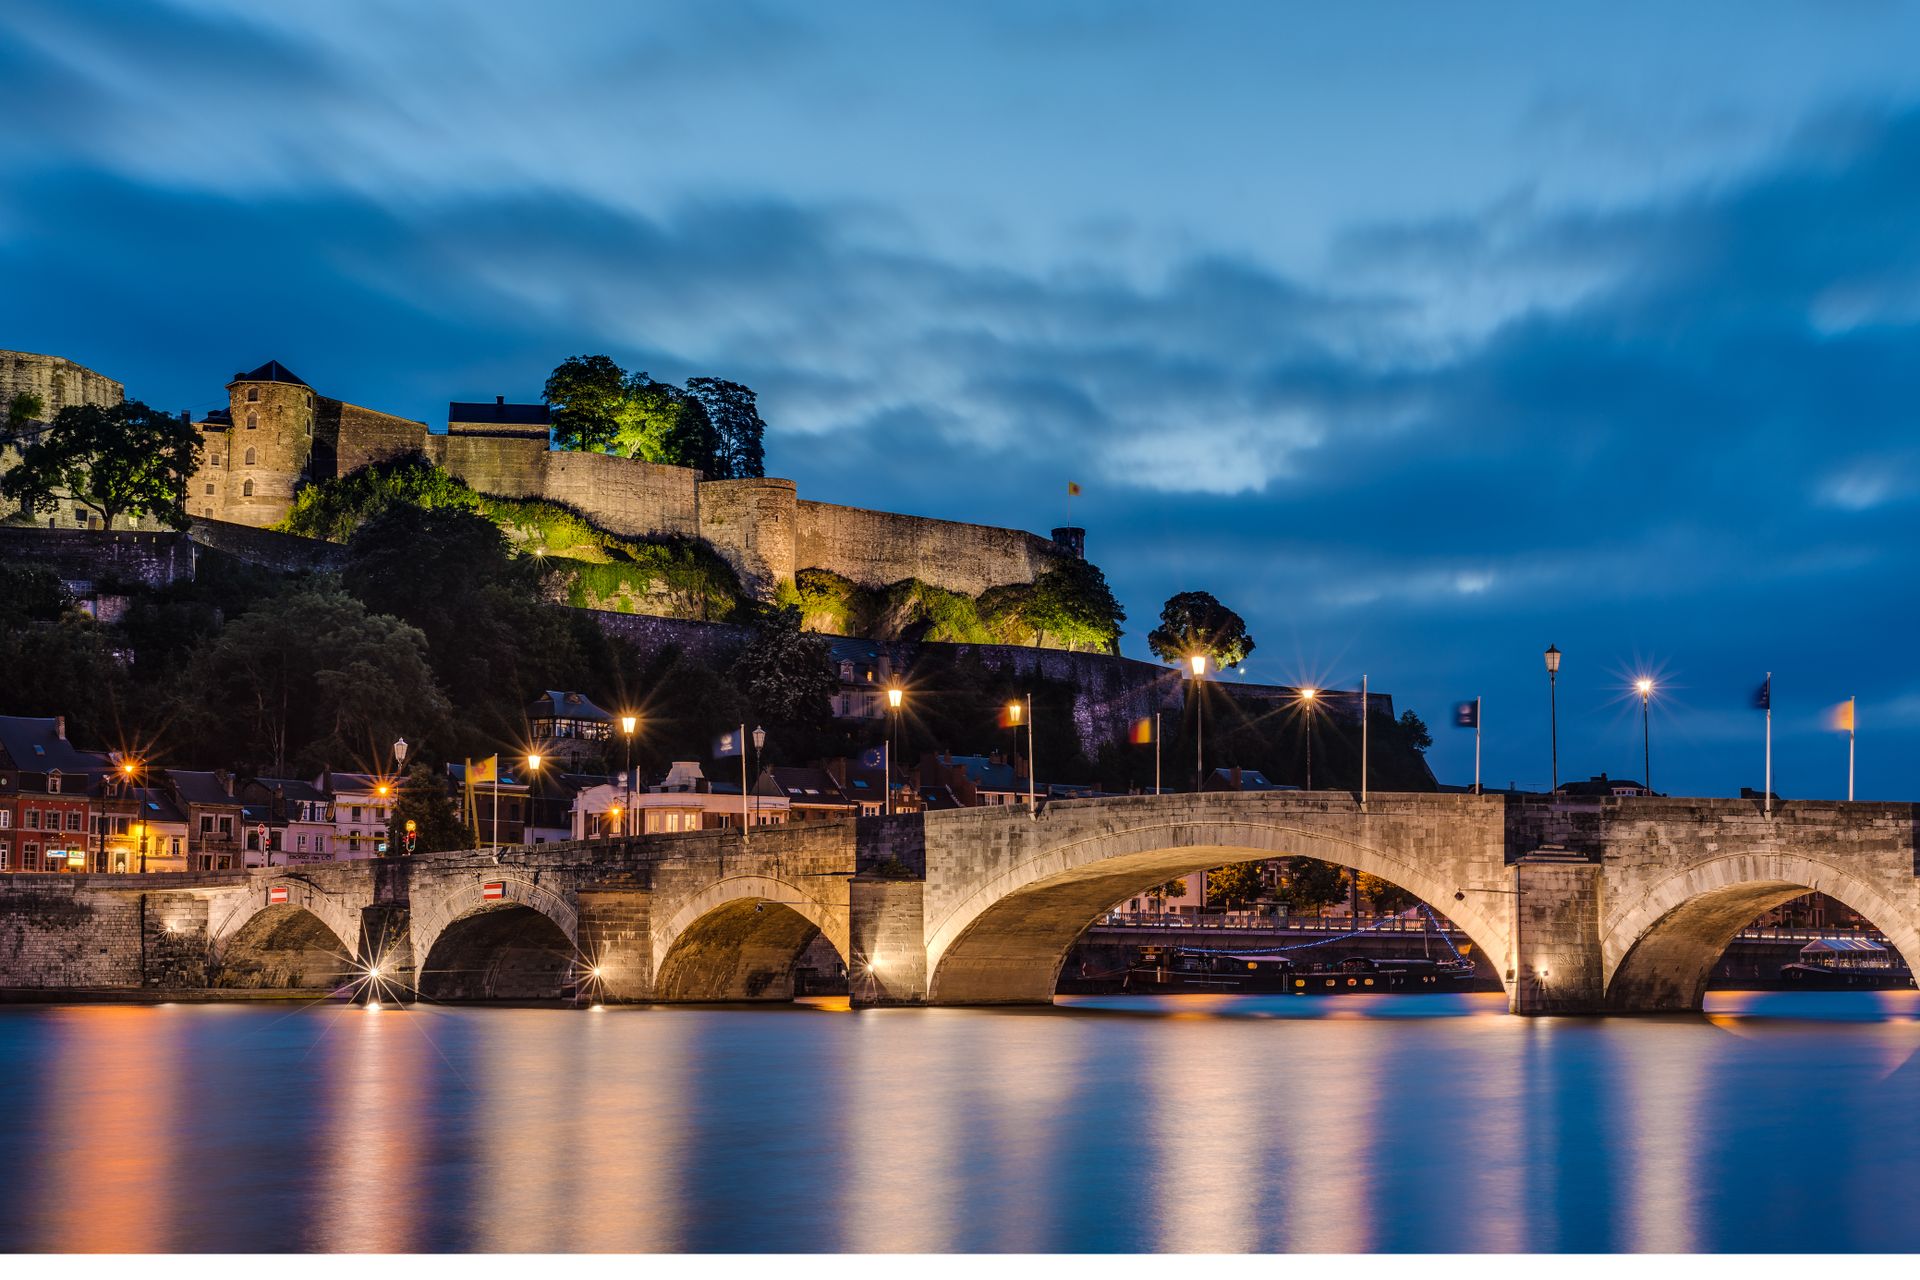 Vue sur le pont de Namur de nuit - Belgique © WTB - Anibal Trejo